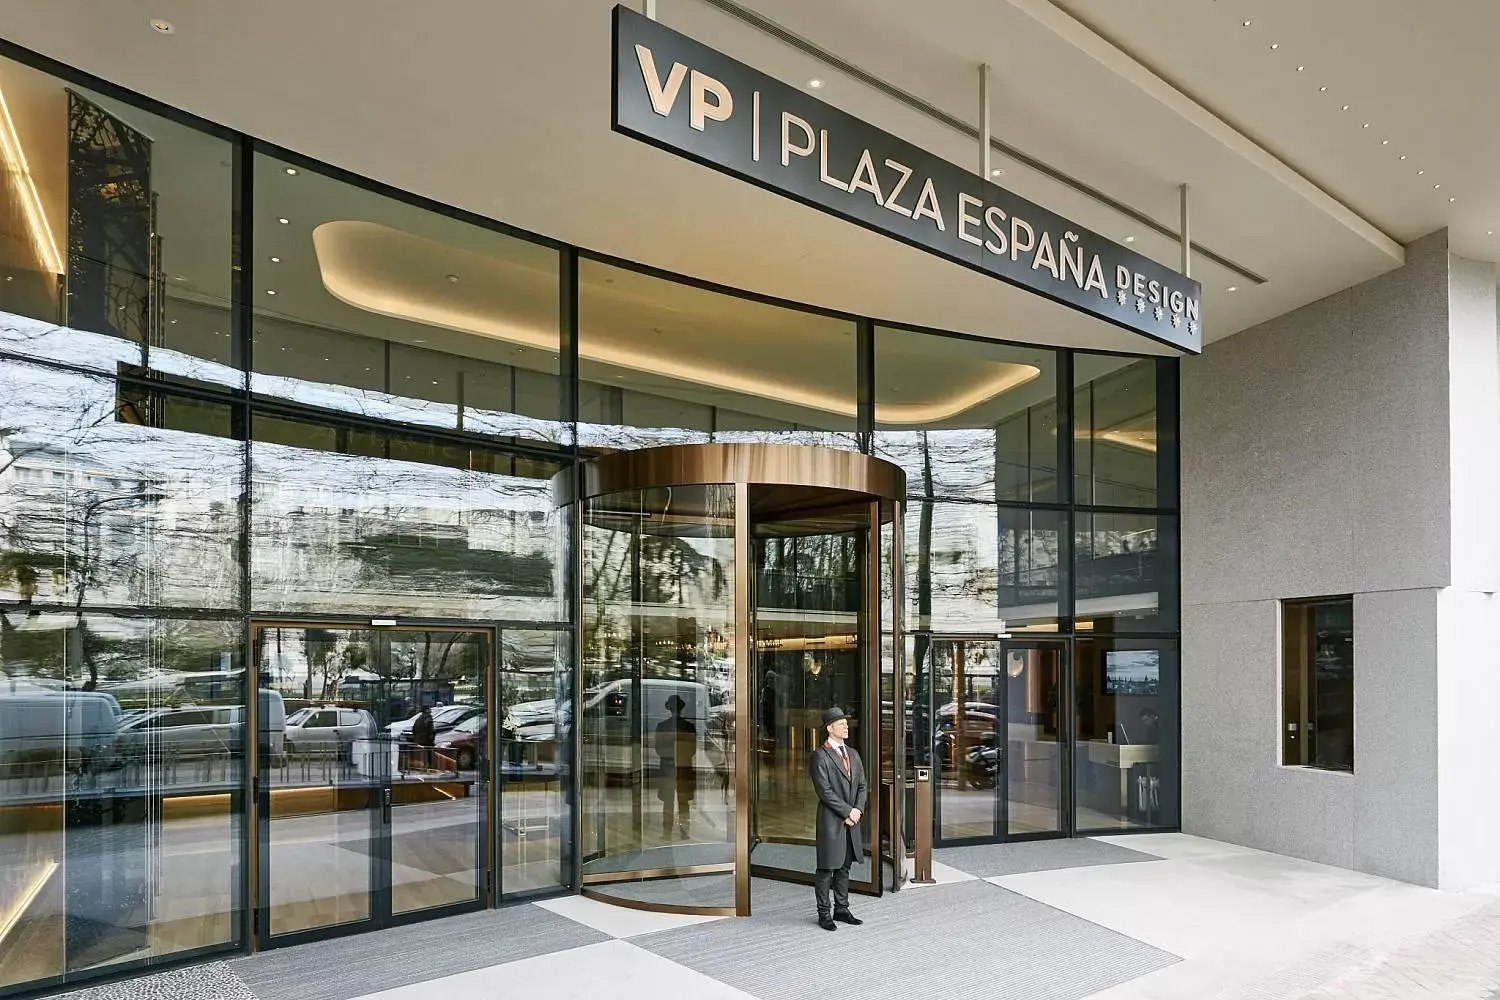 Facade/entrance in VP Plaza España Design